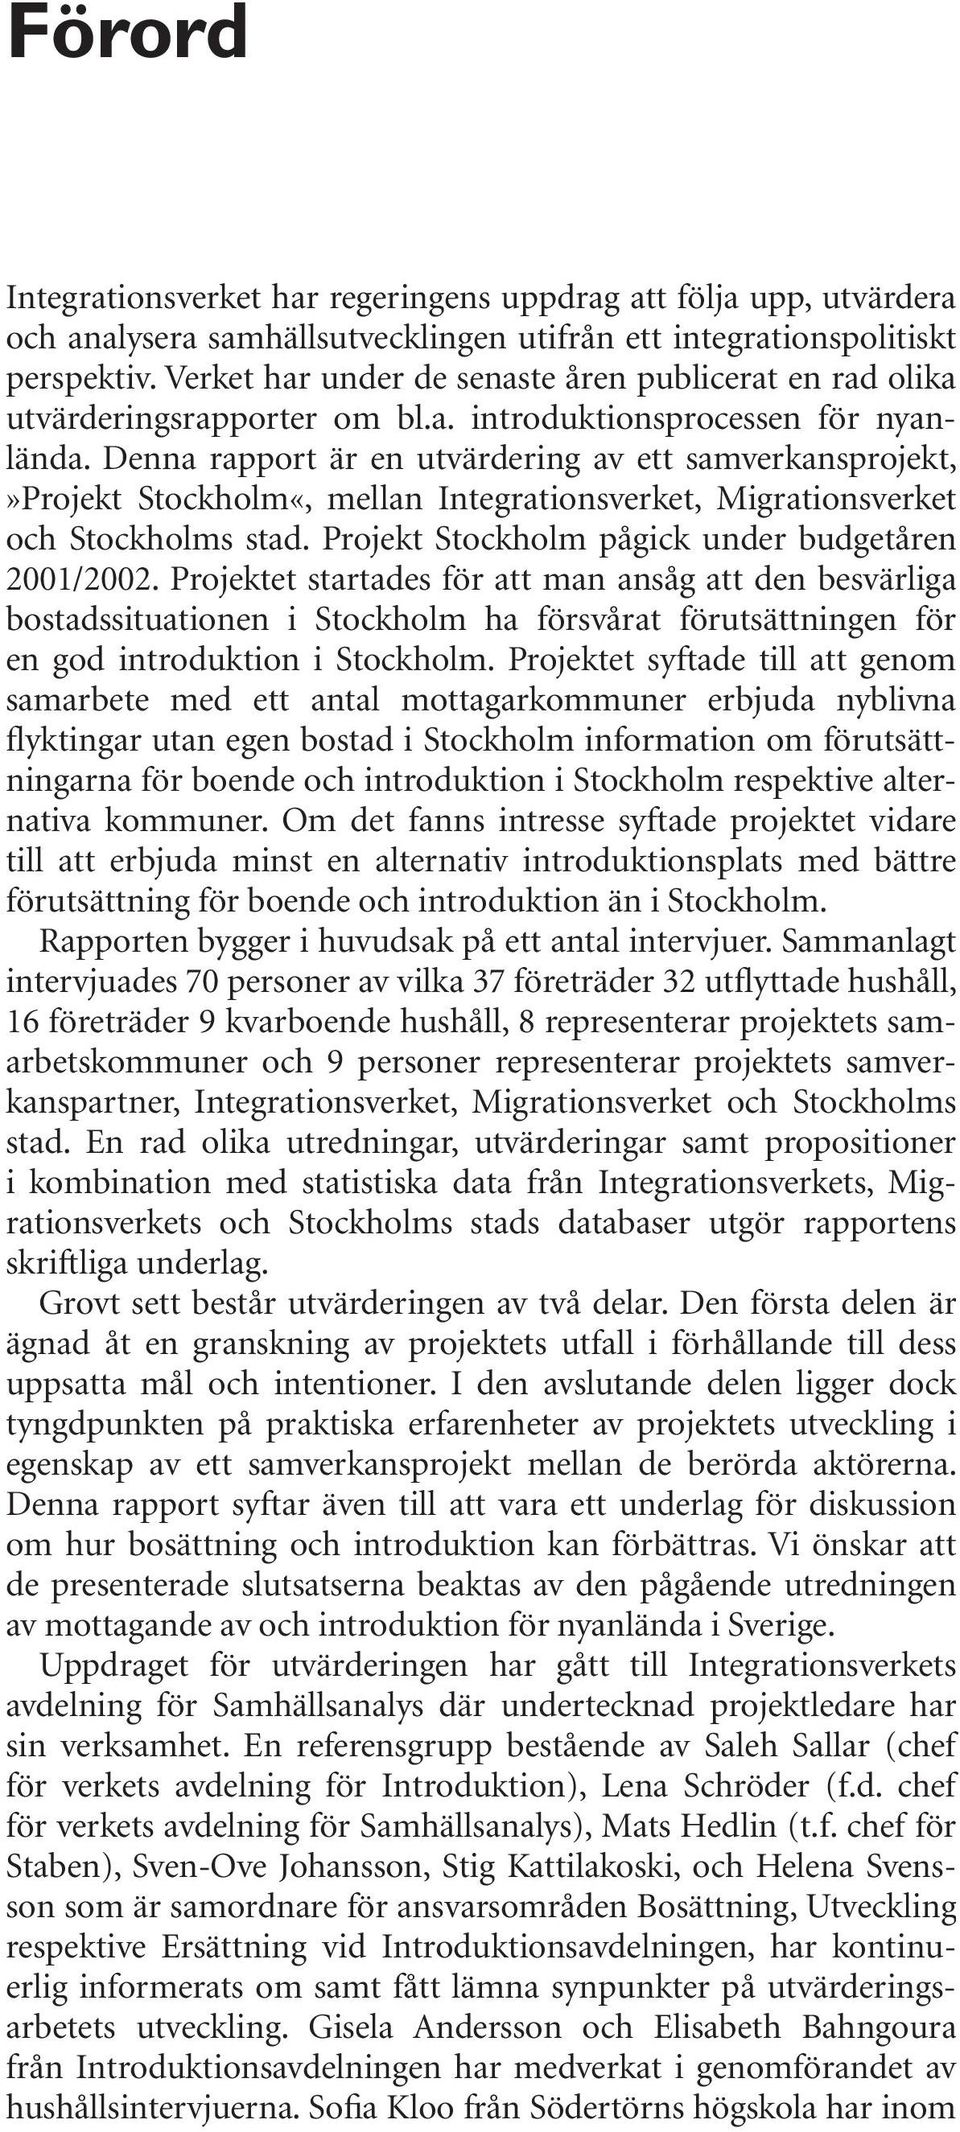 Denna rapport är en utvärdering av ett samverkansprojekt,»projekt Stockholm«, mellan Integrationsverket, Migrationsverket och Stockholms stad. Projekt Stockholm pågick under budgetåren 2001/2002.